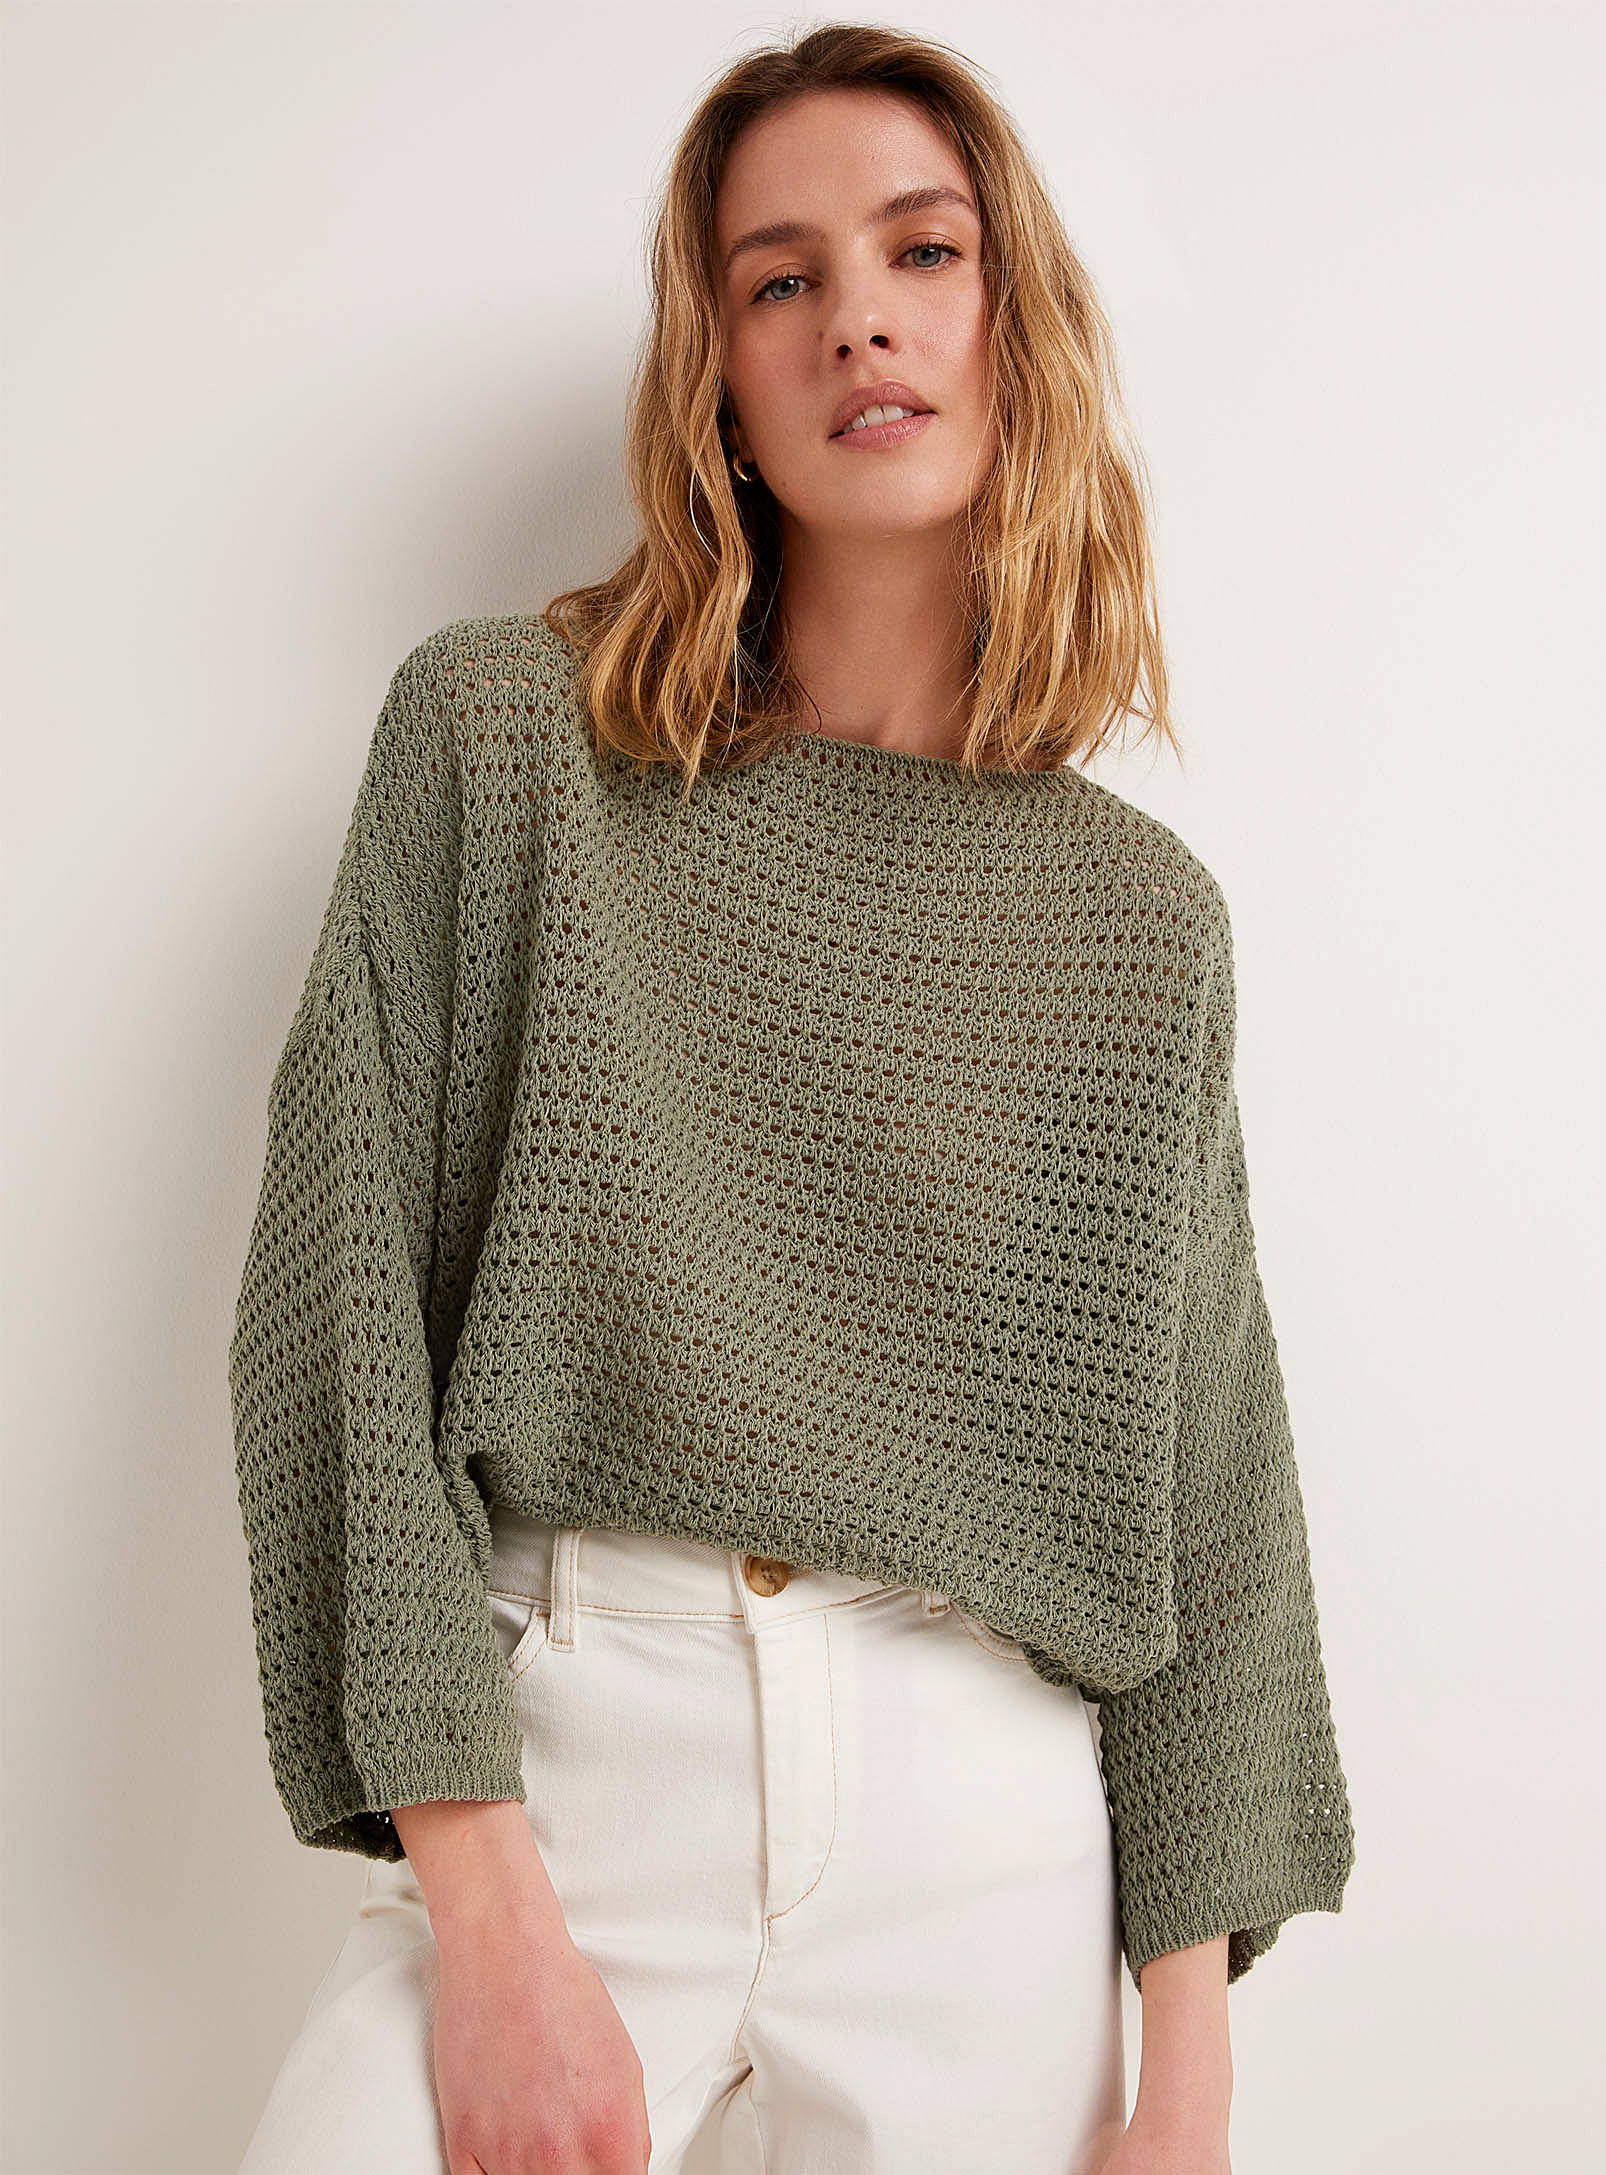 Contemporaine Openwork Crochet Loose Sweater In Green